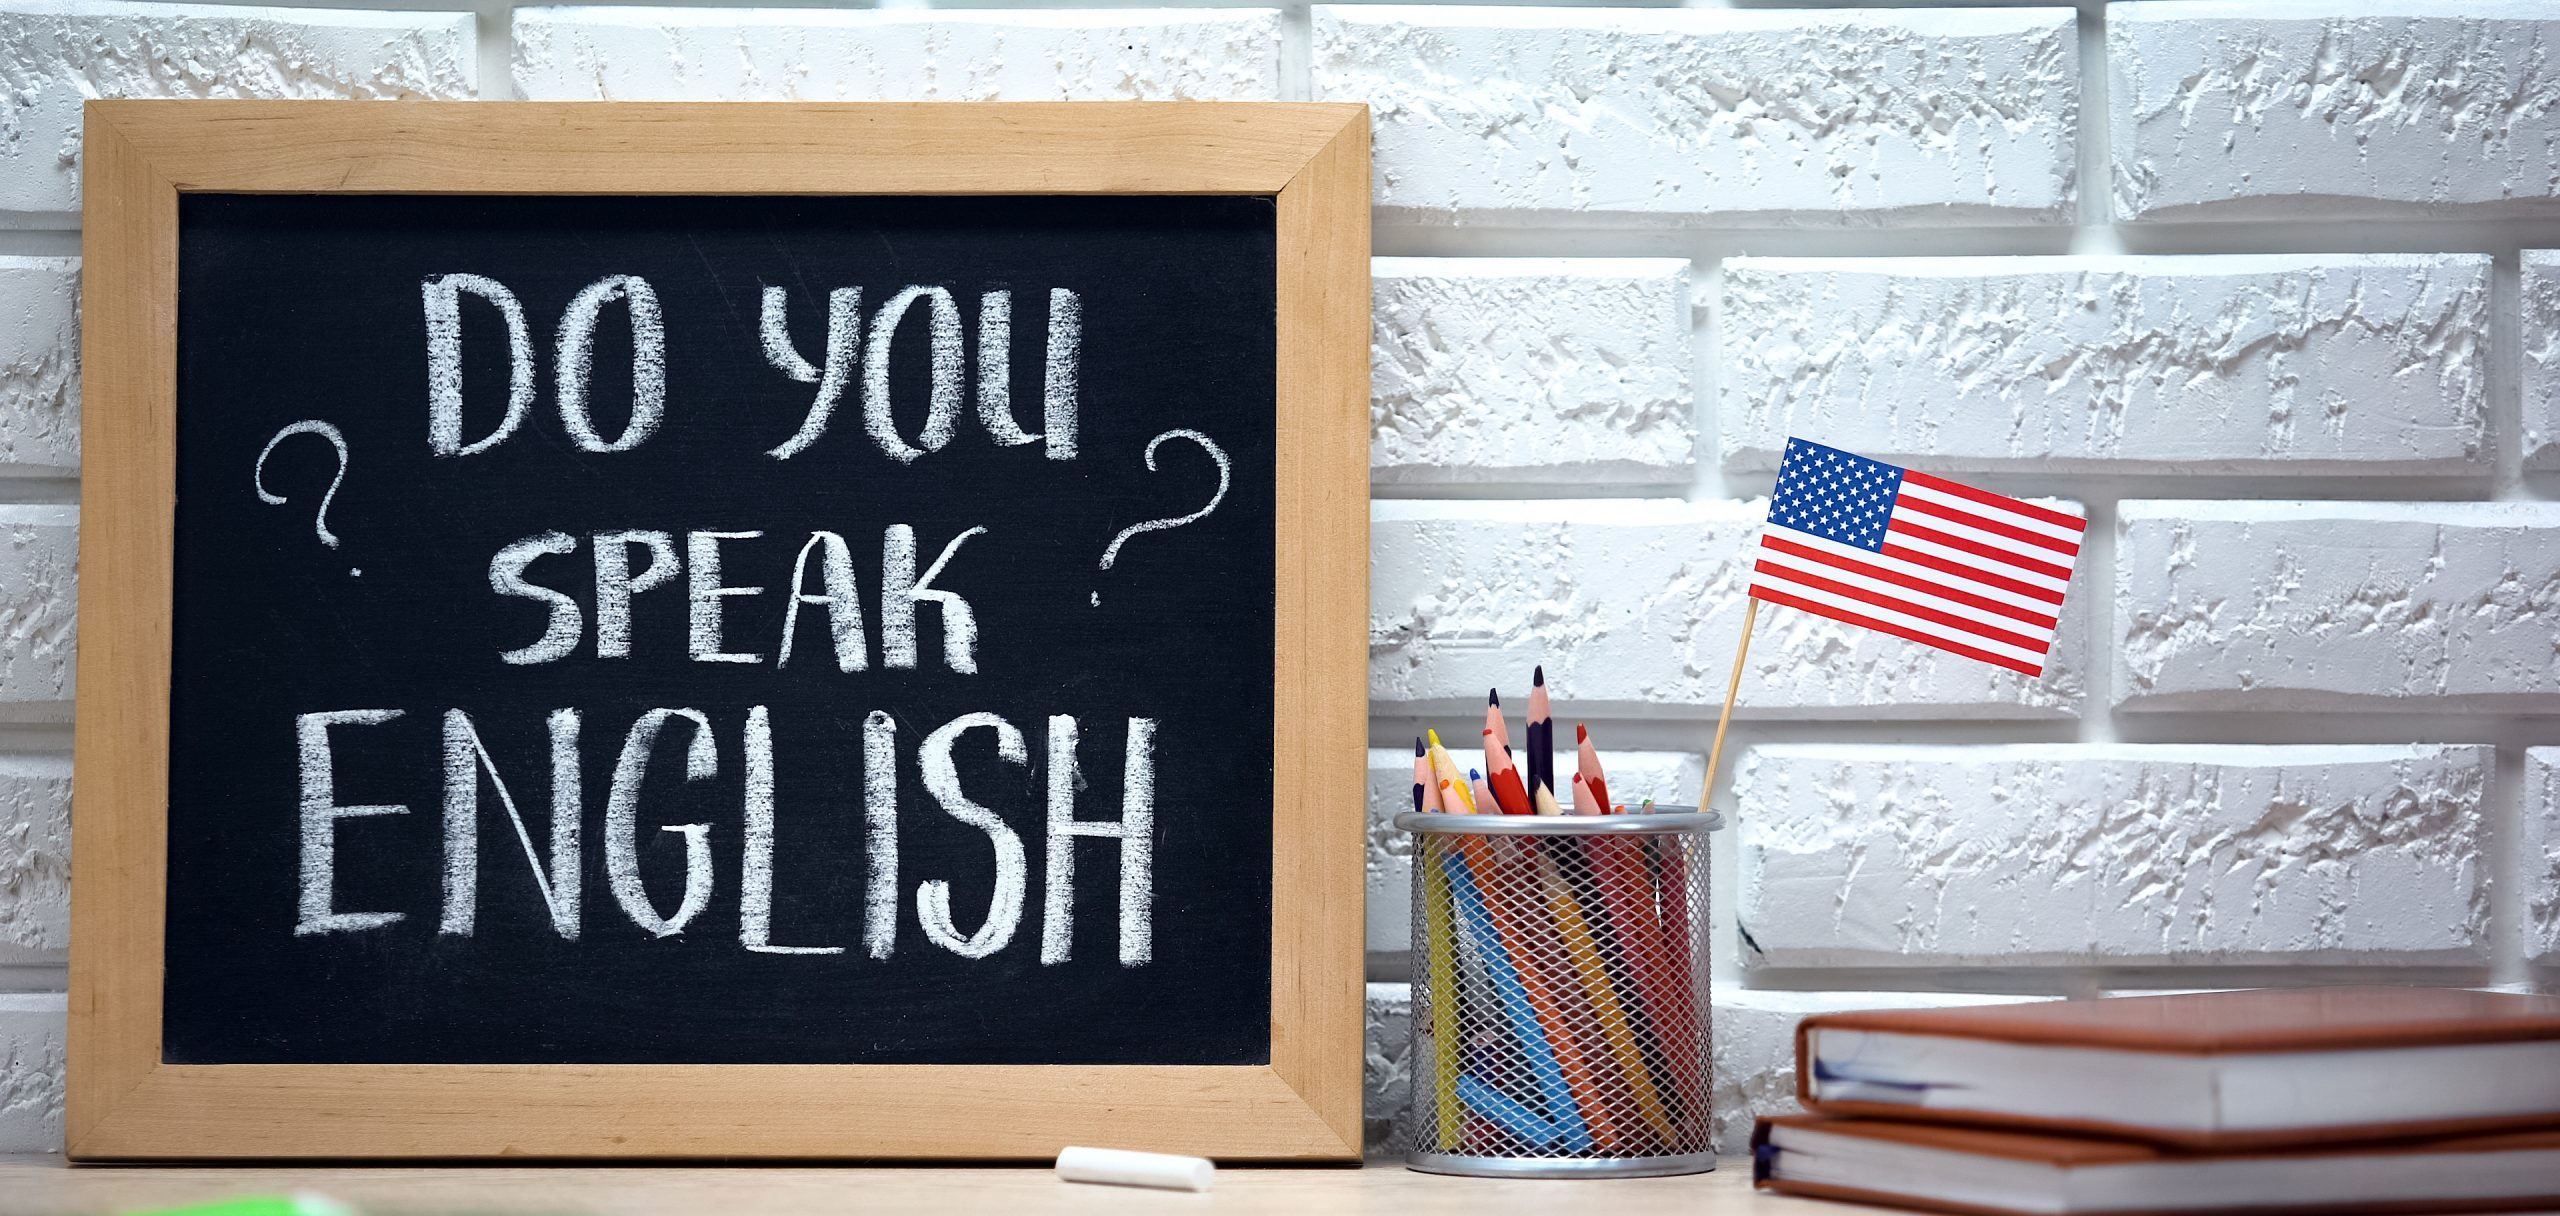 Como encontrar aulas gratuitas de inglês para aprender online